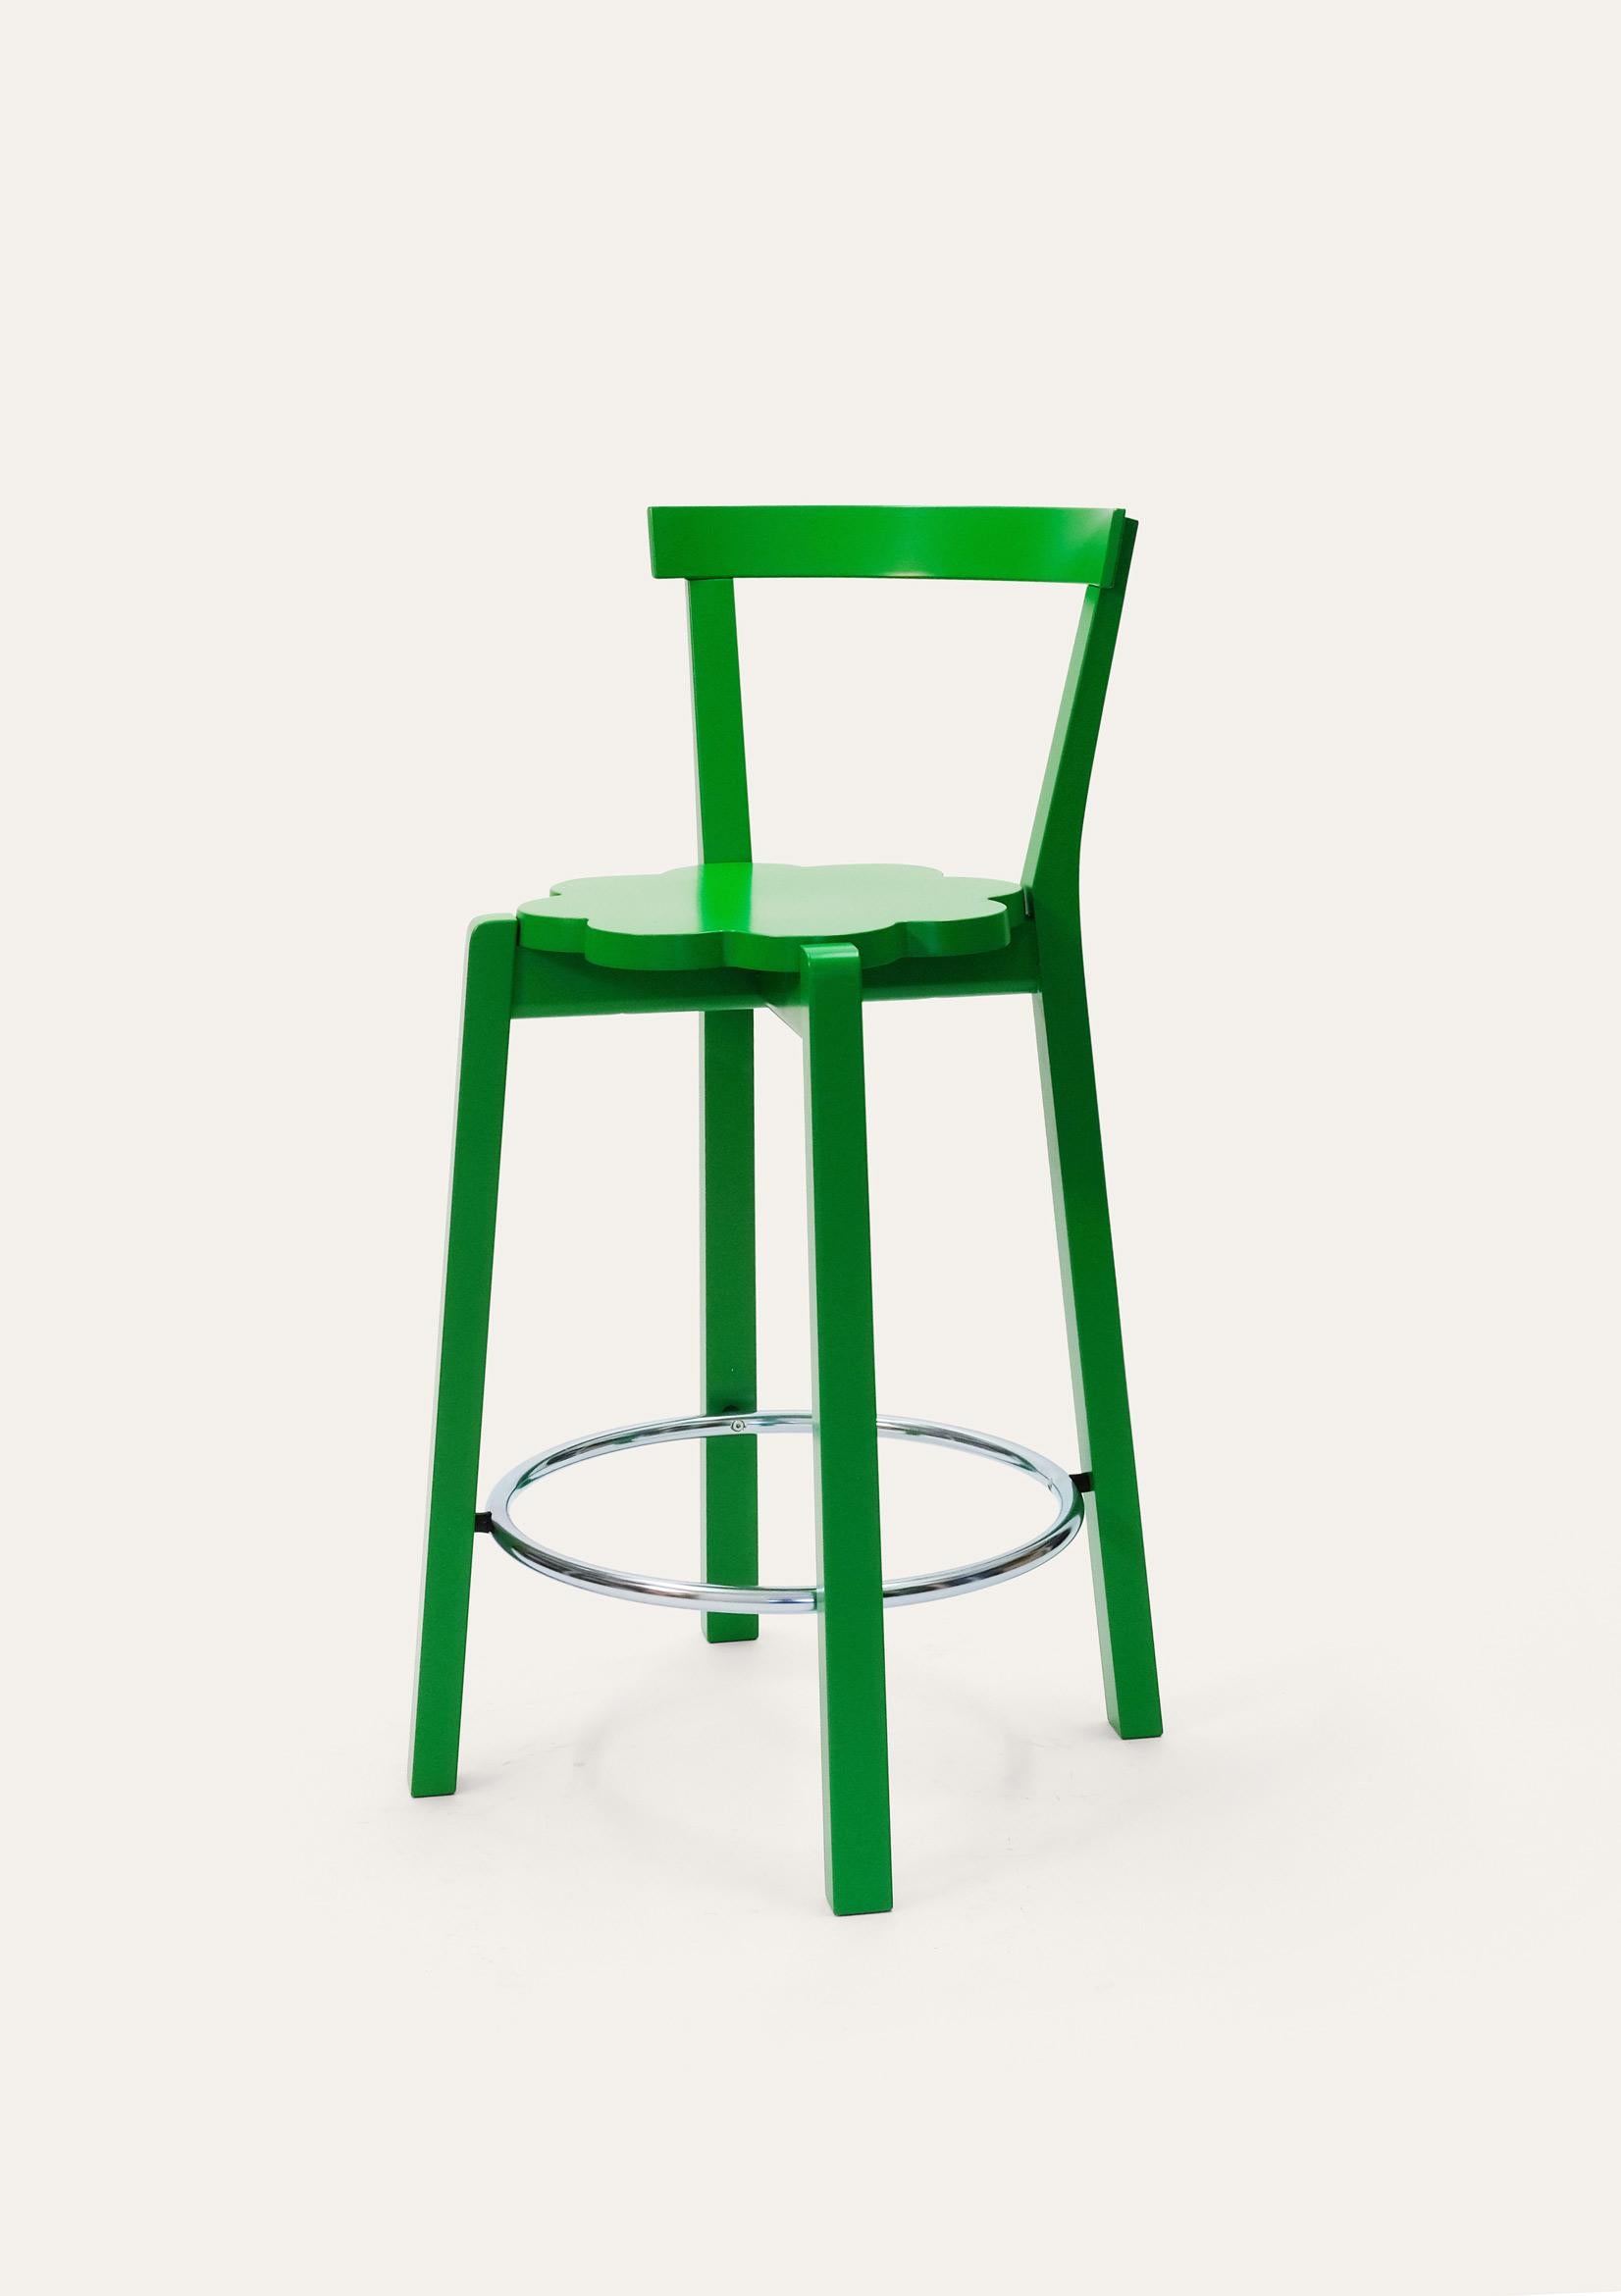 Barstuhl Green Blossom von Storängen Design
Abmessungen: T 48 x B 43 x H 92 x SH 65 cm
MATERIALIEN: Birkenholz, Stahl.
Erhältlich in anderen Farben und Größen. Mit oder ohne Rückenlehne.

Ein kleiner und ordentlicher, stapelbarer Stuhl, der sich gut